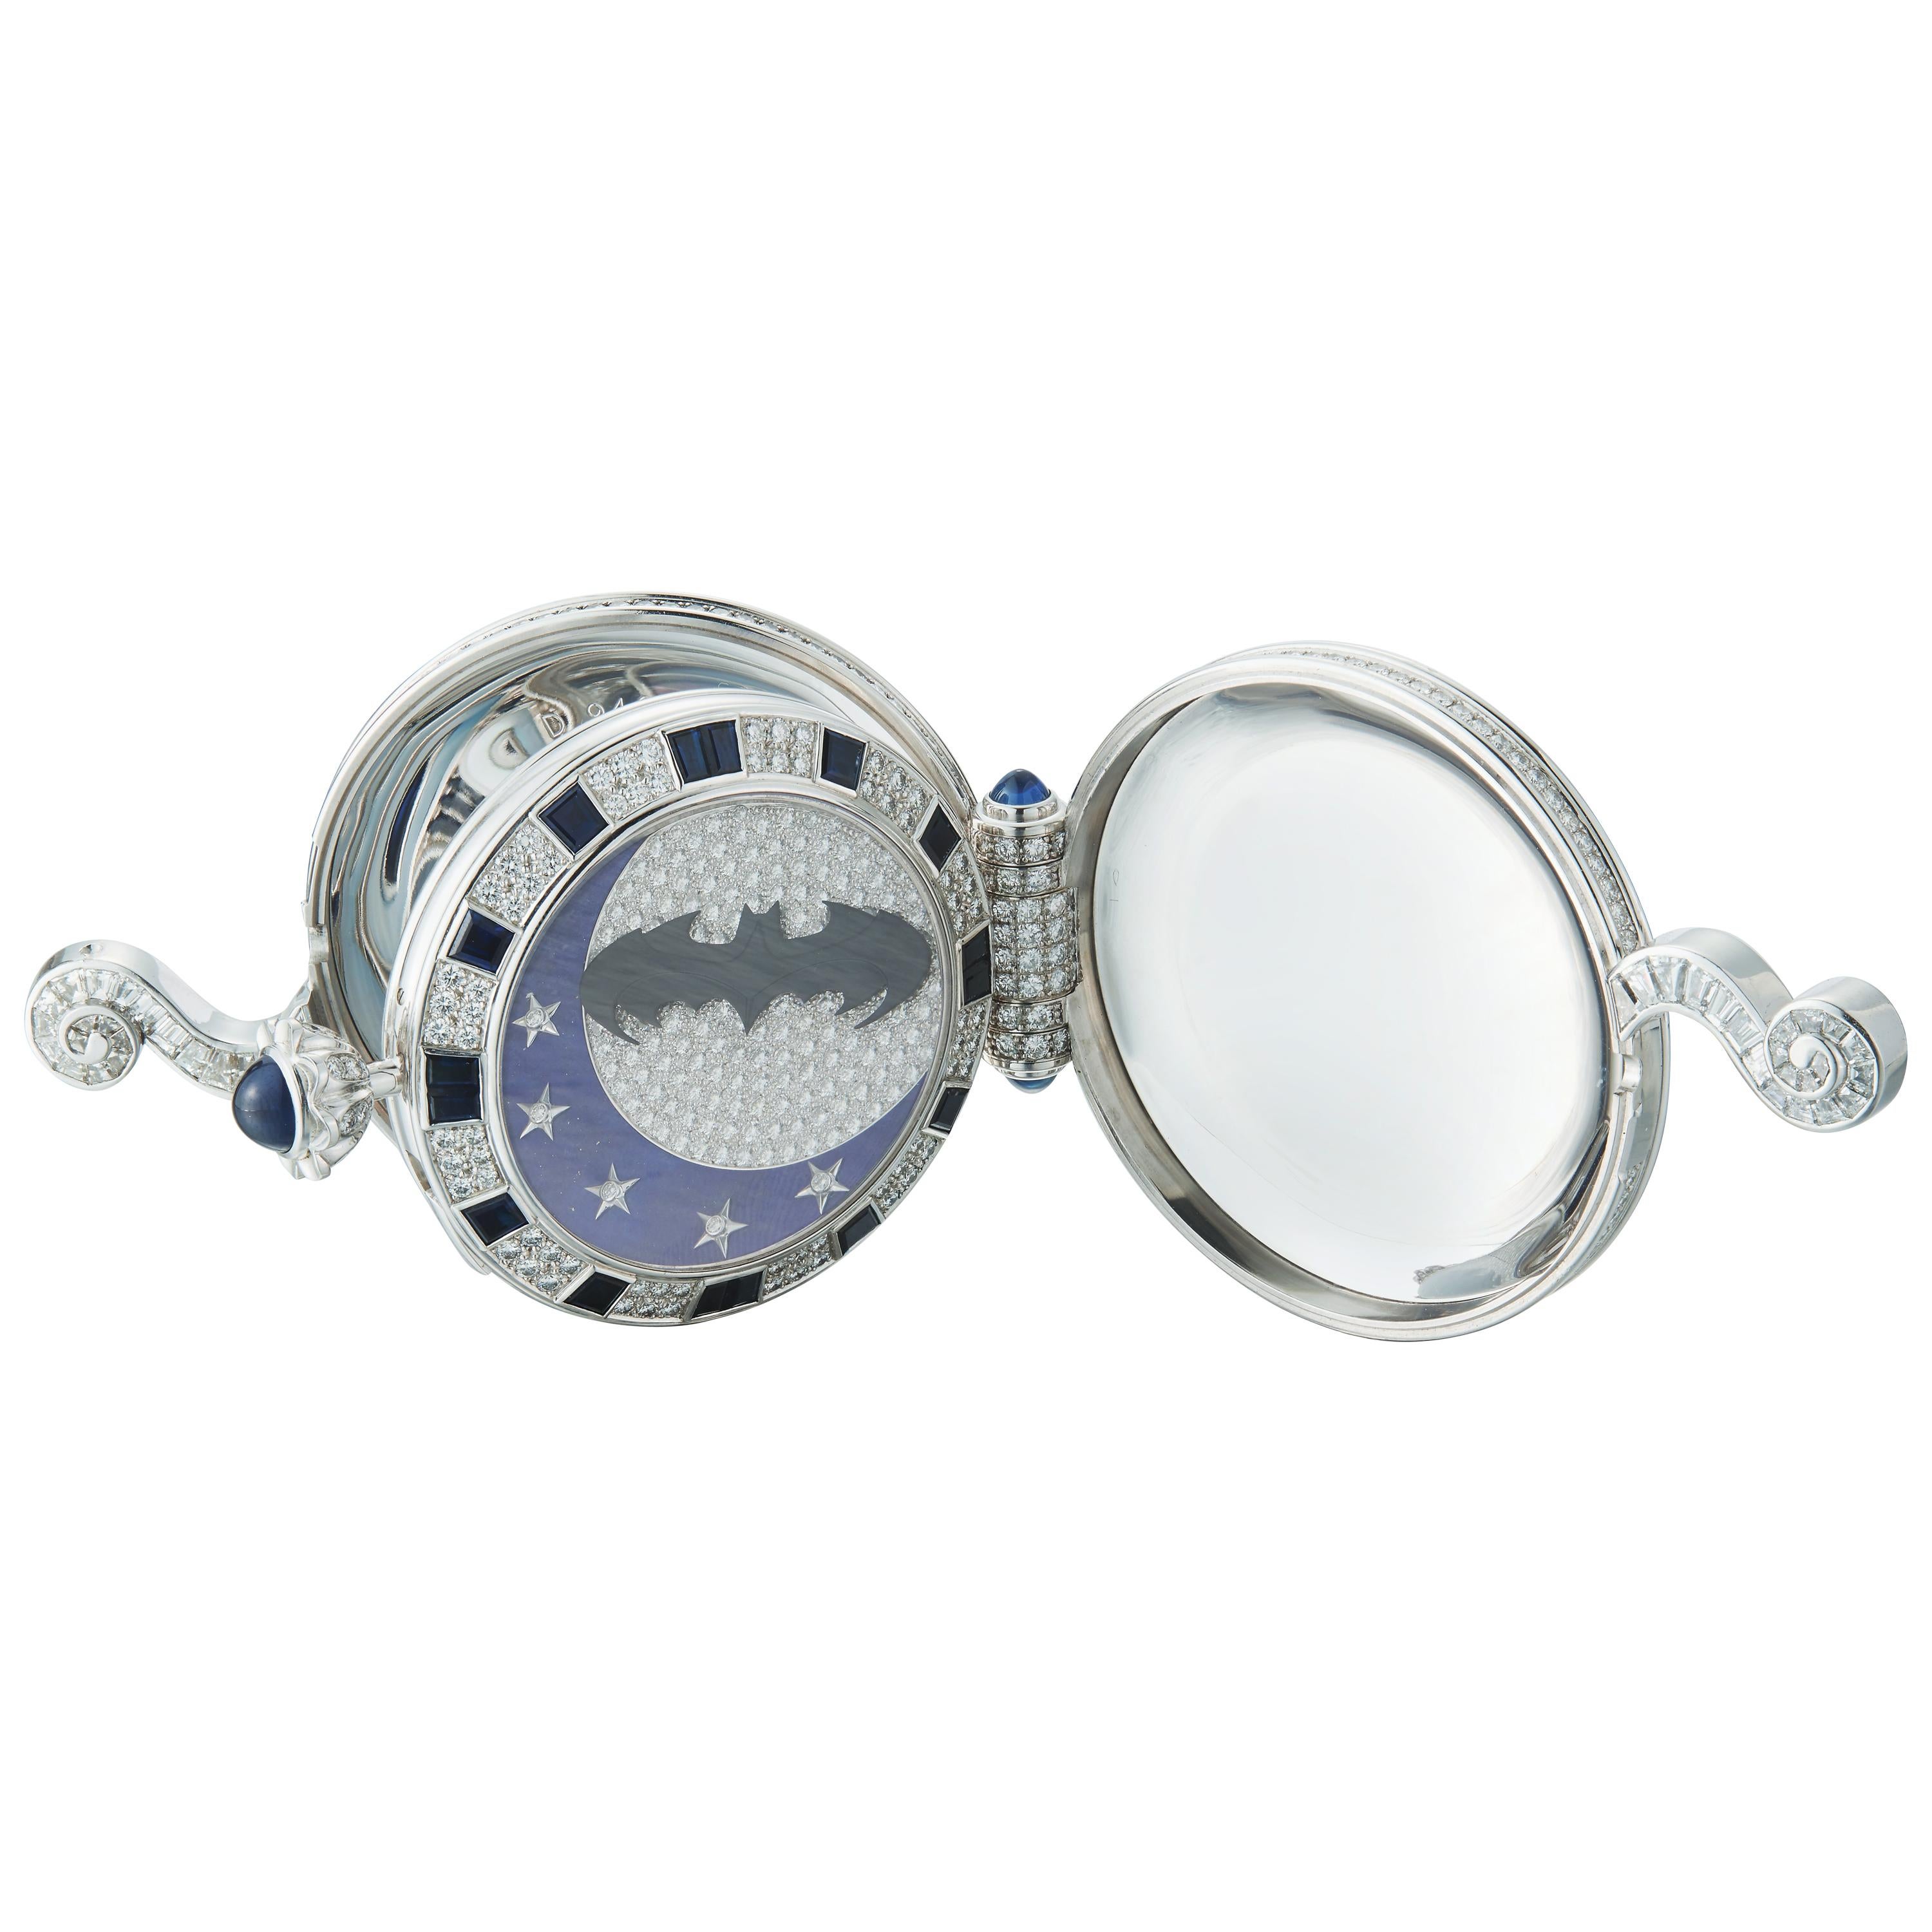 "Day and Night' Batman Automaton Pocket Watch